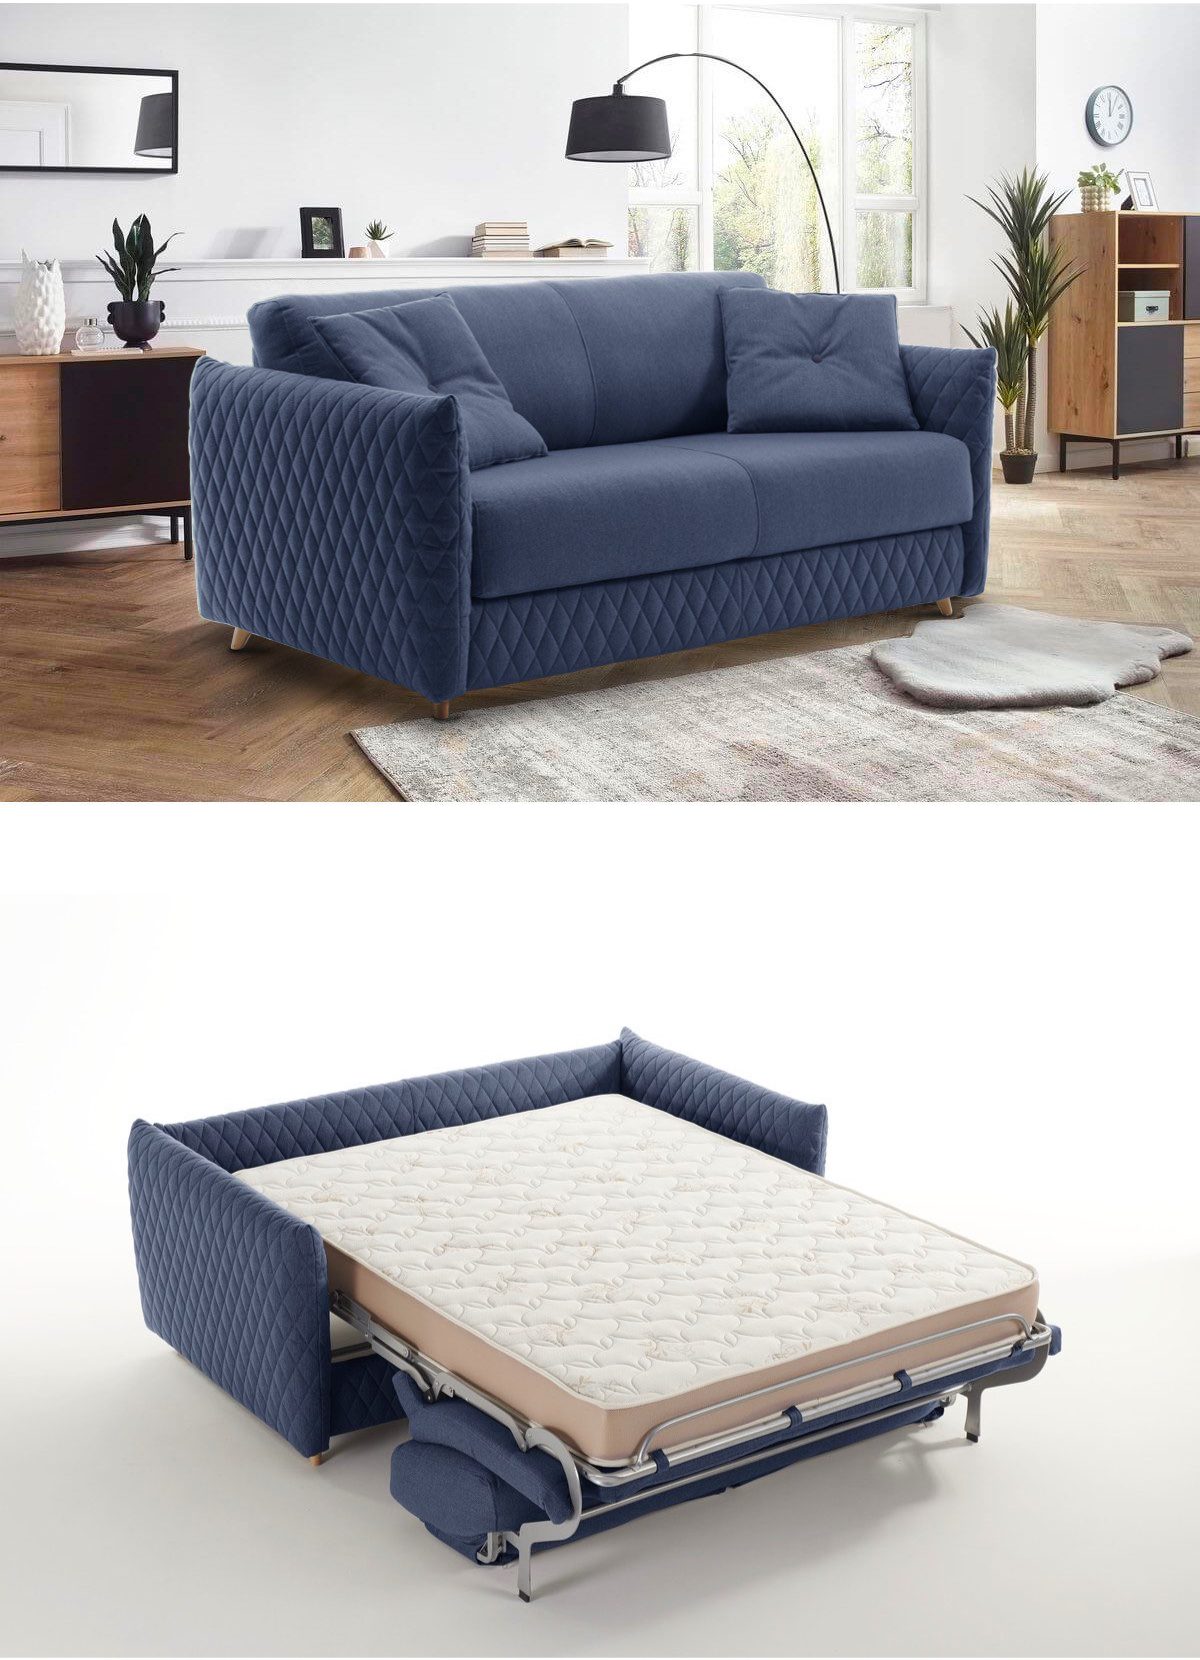 canapé-lit vrai matelas velours design studio parquet chevron meuble bois noir déco